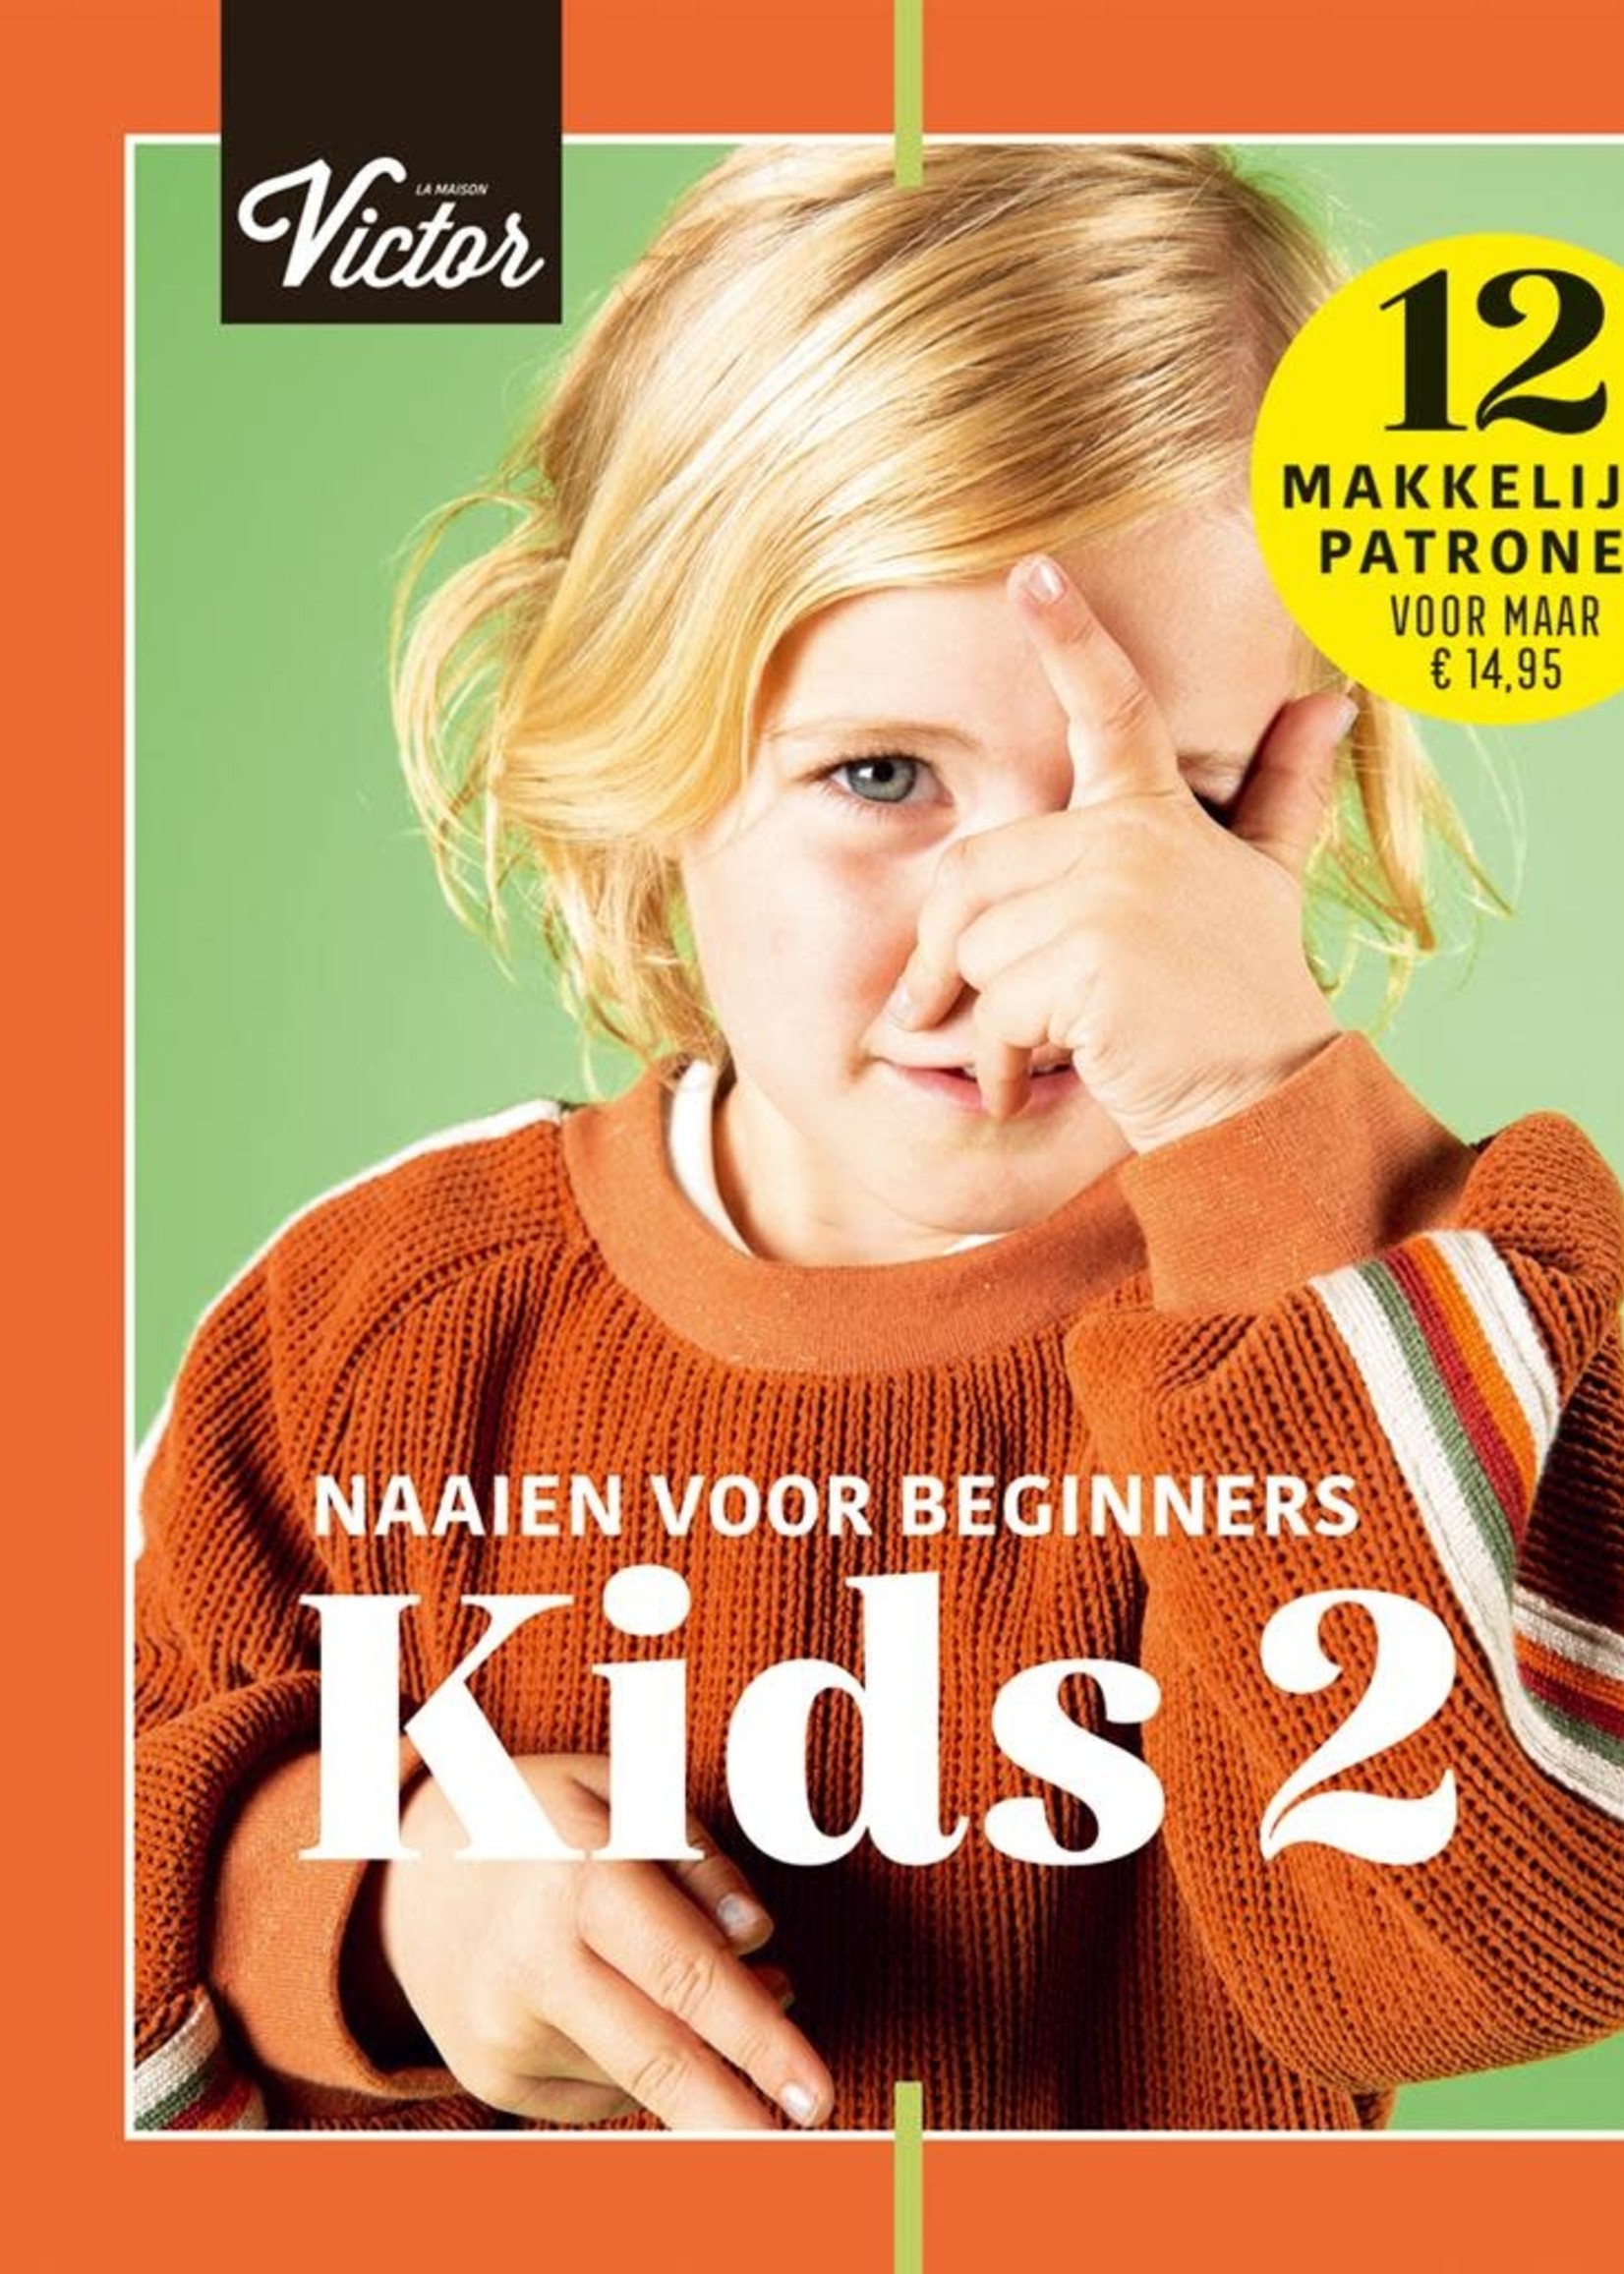 La Maison Victor Naaiboek – La Maison Victor – Naaien voor beginners KIDS 2